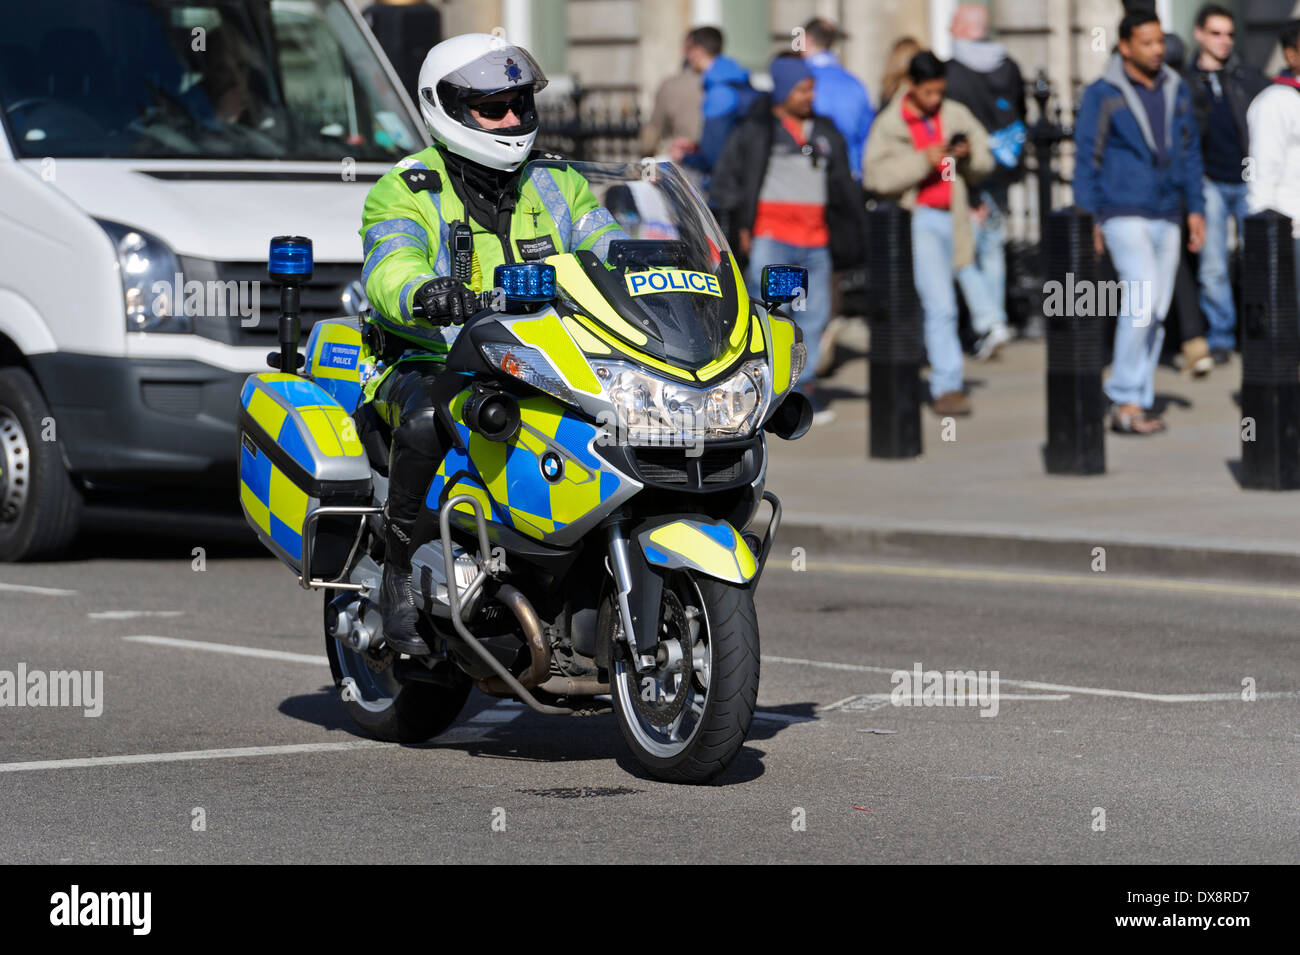 Trafic uniforme policier britannique de BMW Moto, Londres, Angleterre, Royaume-Uni. Banque D'Images